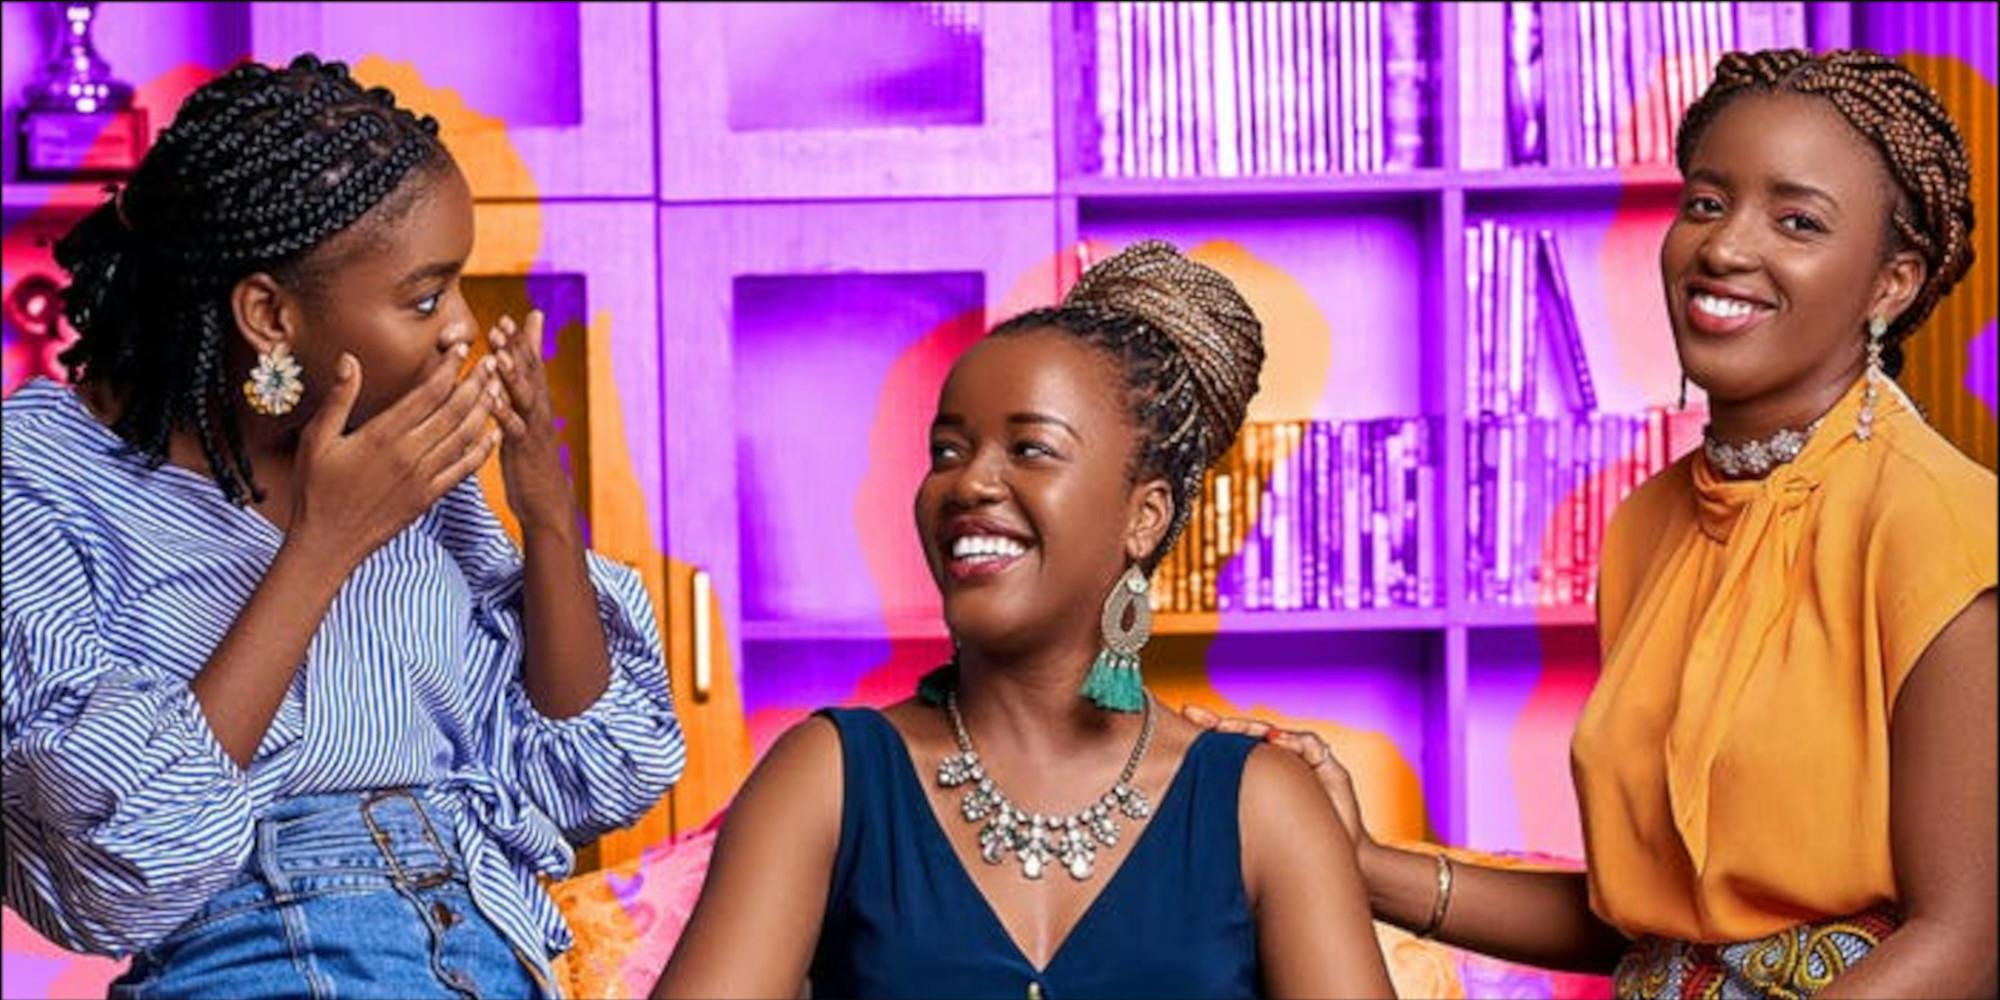 Meet the sisters behind one of Africa’s biggest teen webseries